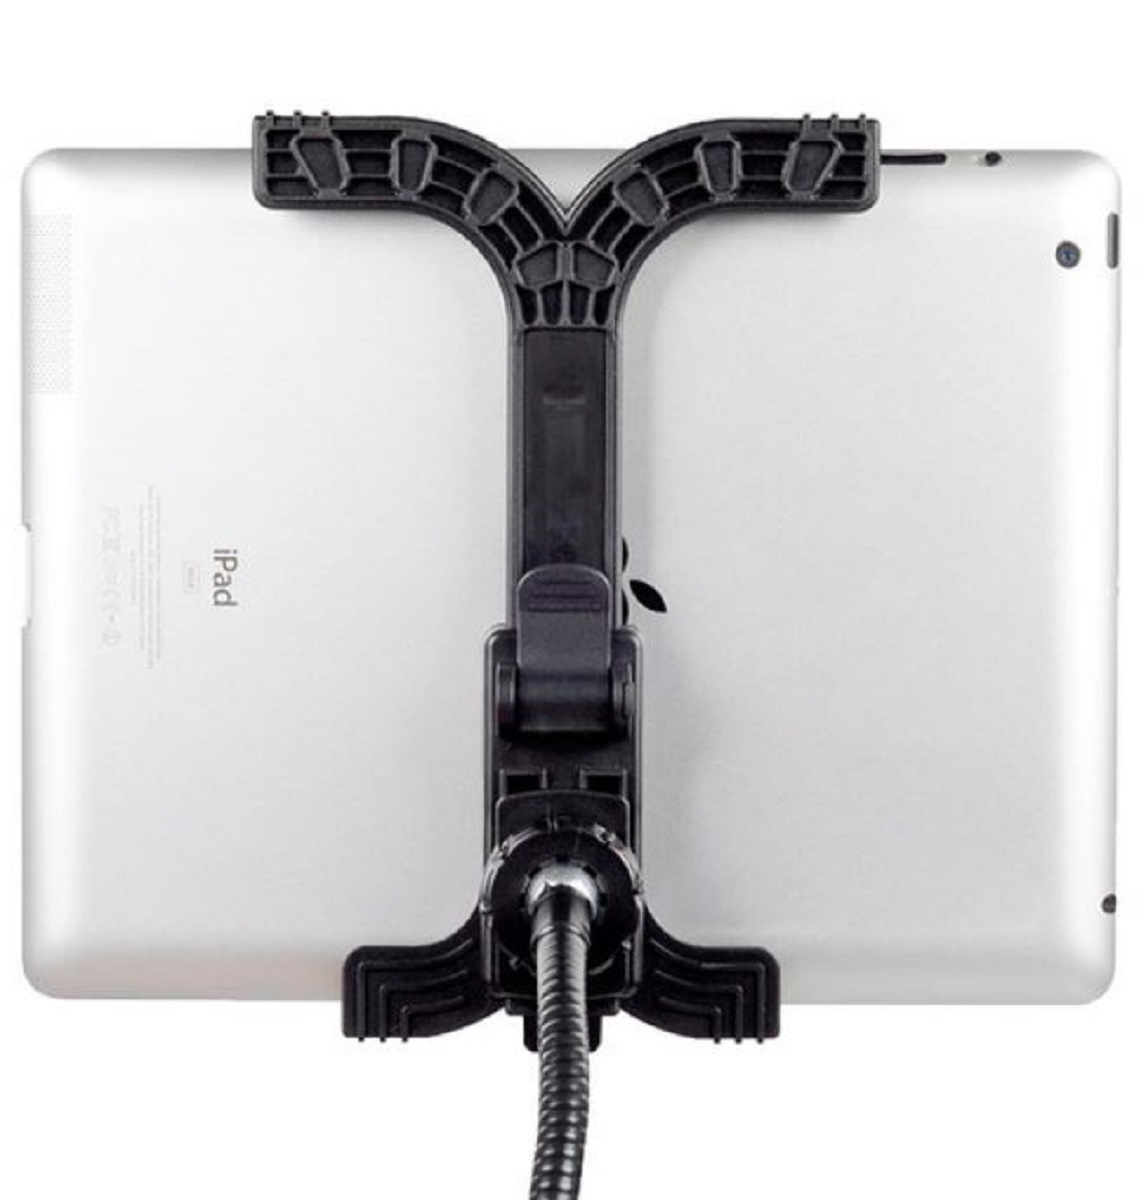 Soporto flexible BRESSER de cuello de cisne BRESSER BR-145 para tabletas y teléfonos